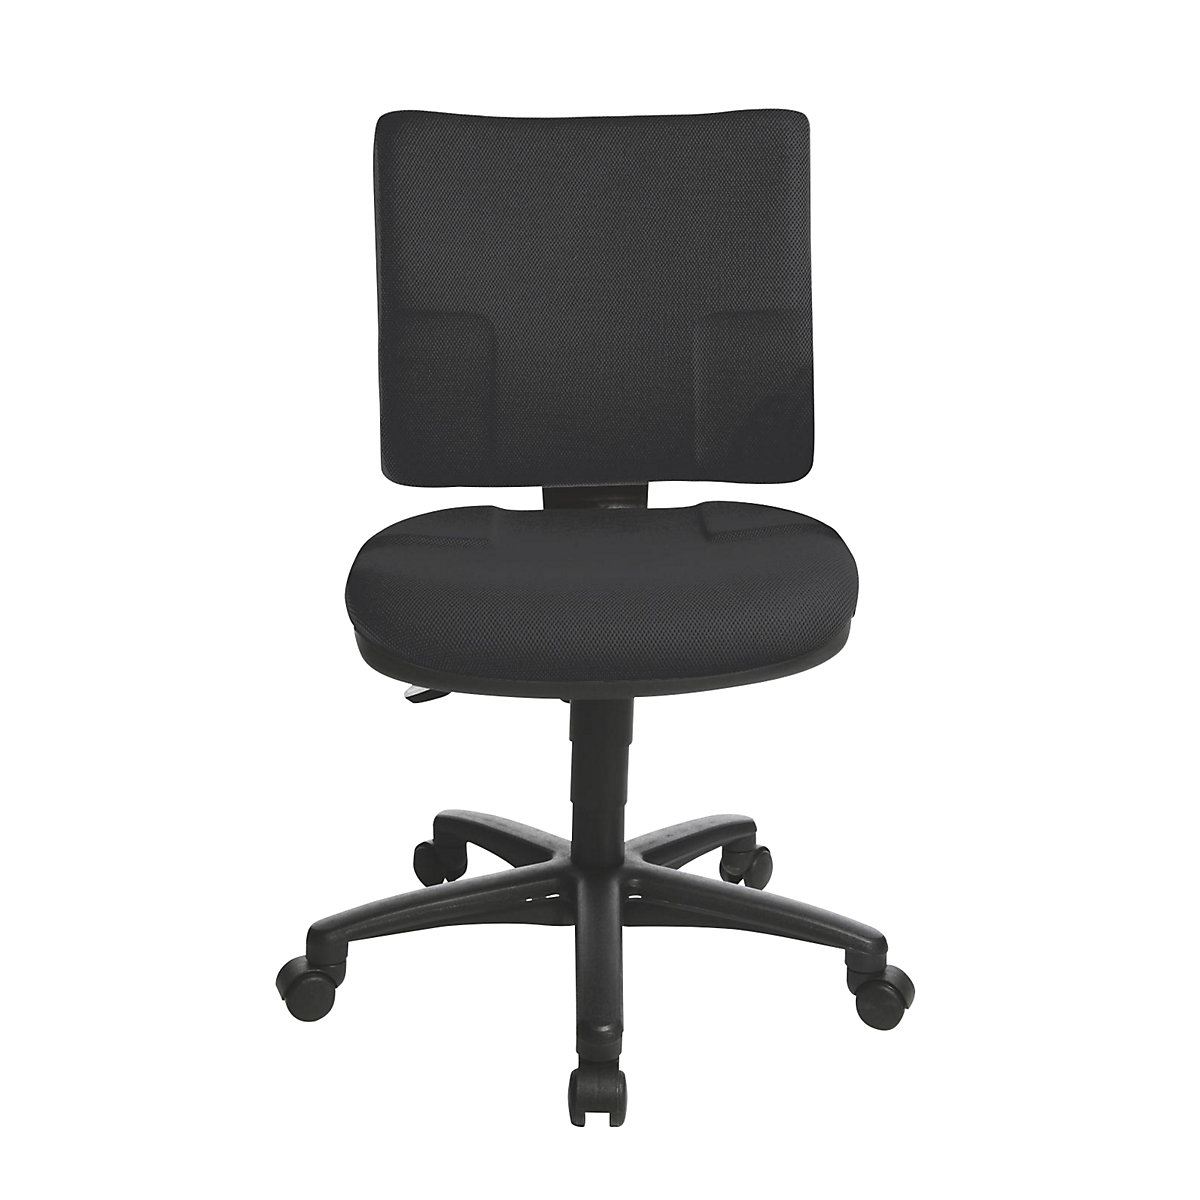 Standard swivel chair - Topstar